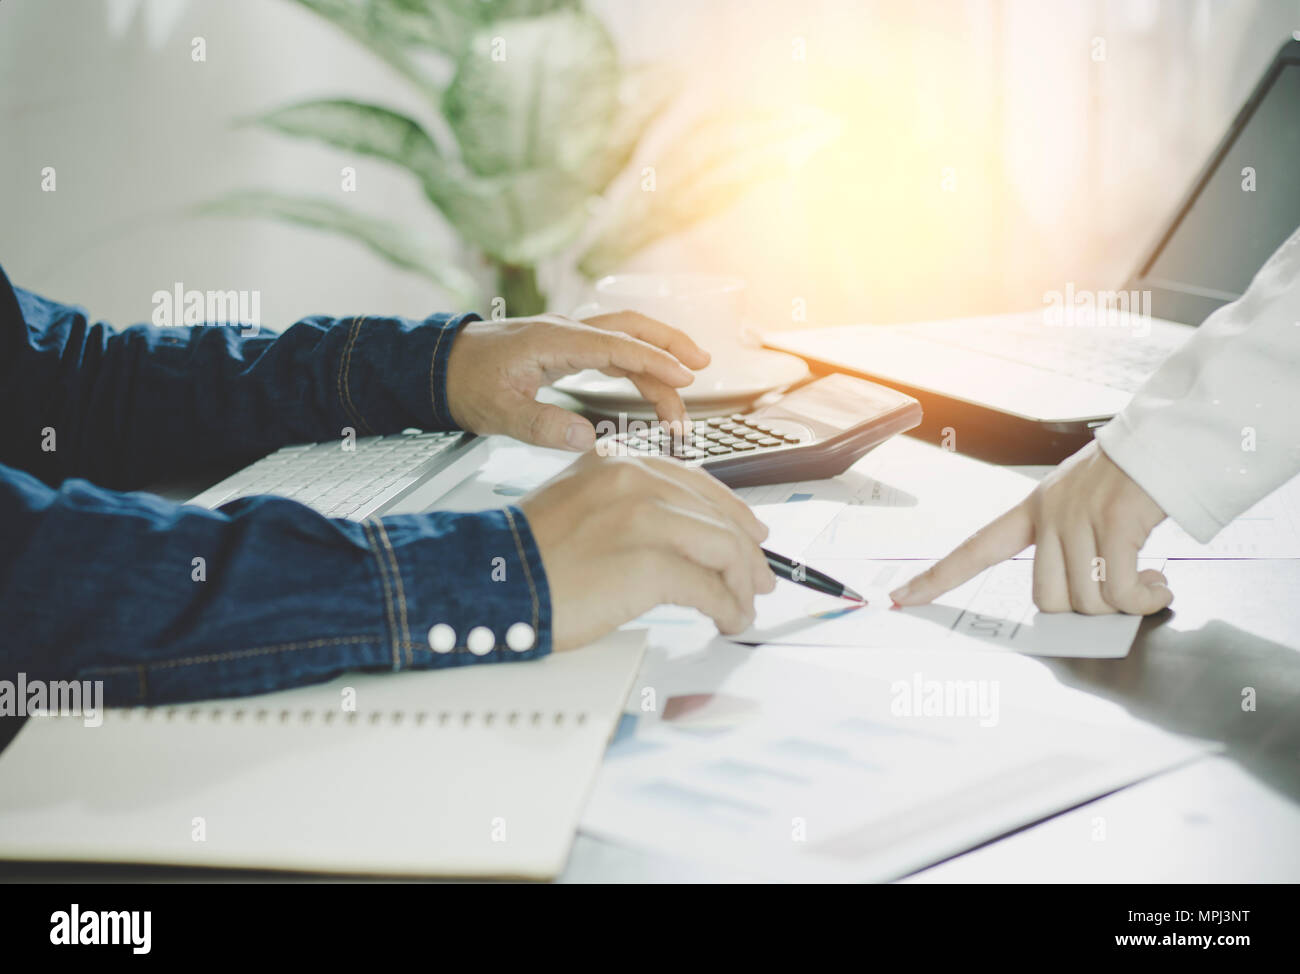 Berechnen budget Business Planung Konzept, zwei Menschen couting Einnahmen und Ausgaben durch den Einsatz von Taschenrechner und Papier Grafik auf Schreibtisch in Home Stockfoto